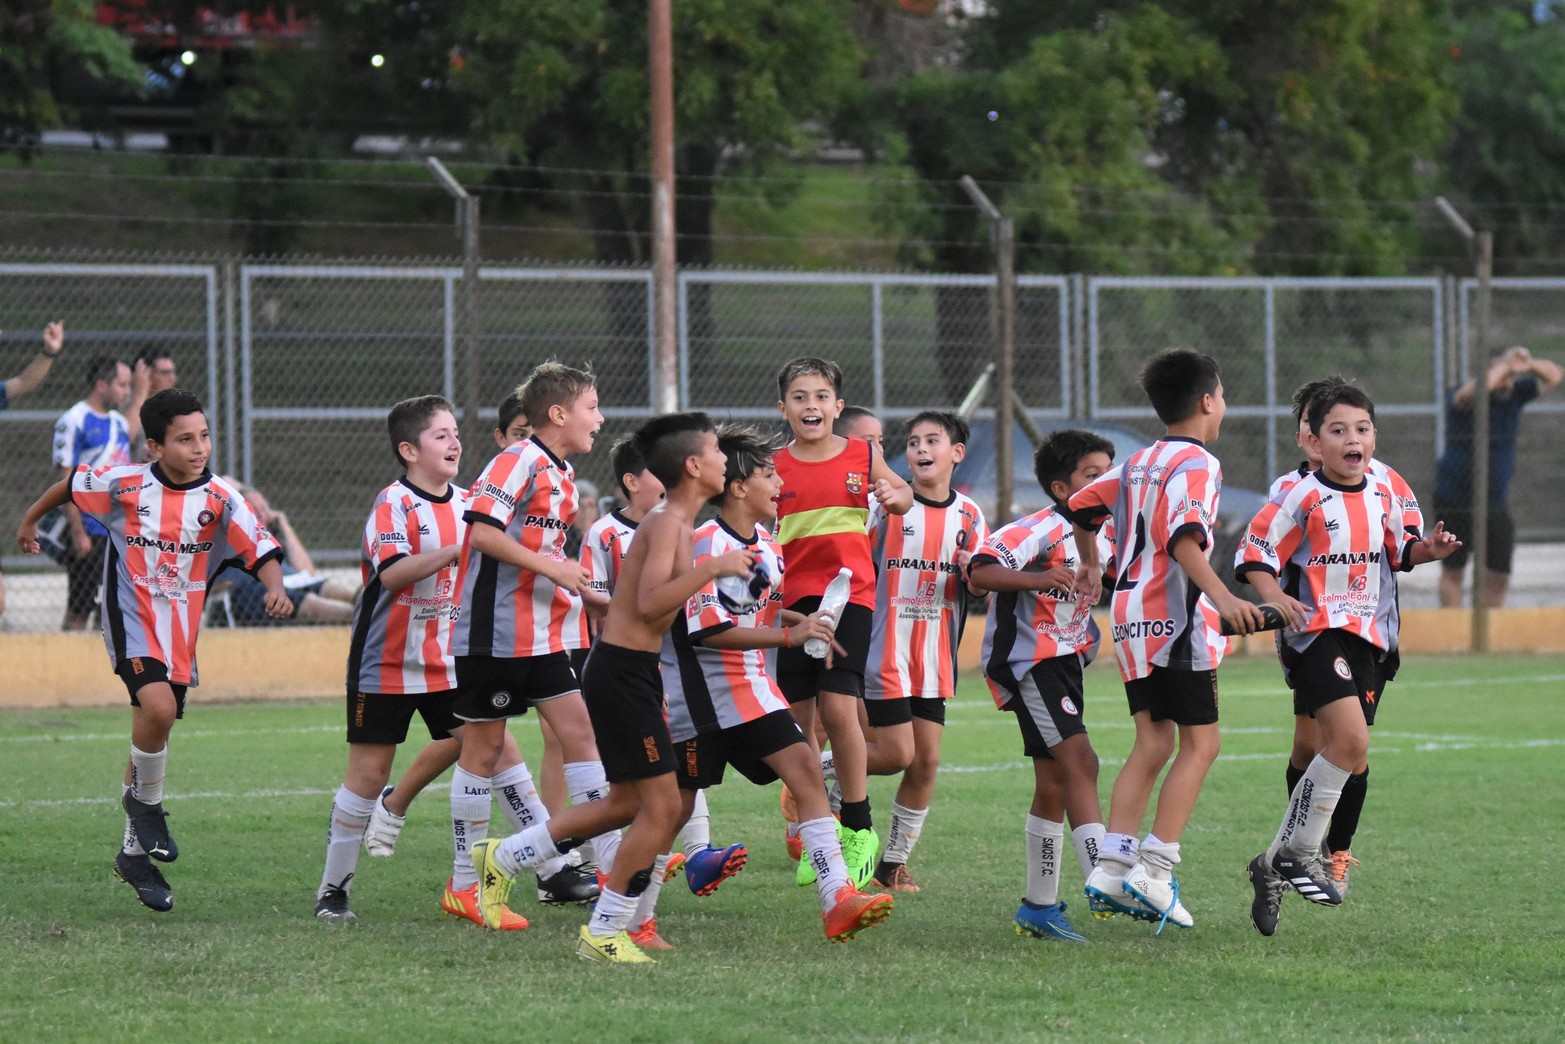 Cosmos FC y Naranjitos, los mejores del Tiburoncito. Finalizó el torneo de fútbol infantil en El Quillá. Luego de ocho jornadas, numerosos equipos de la ciudad y la región participaron de la segunda edición de esta competencia.